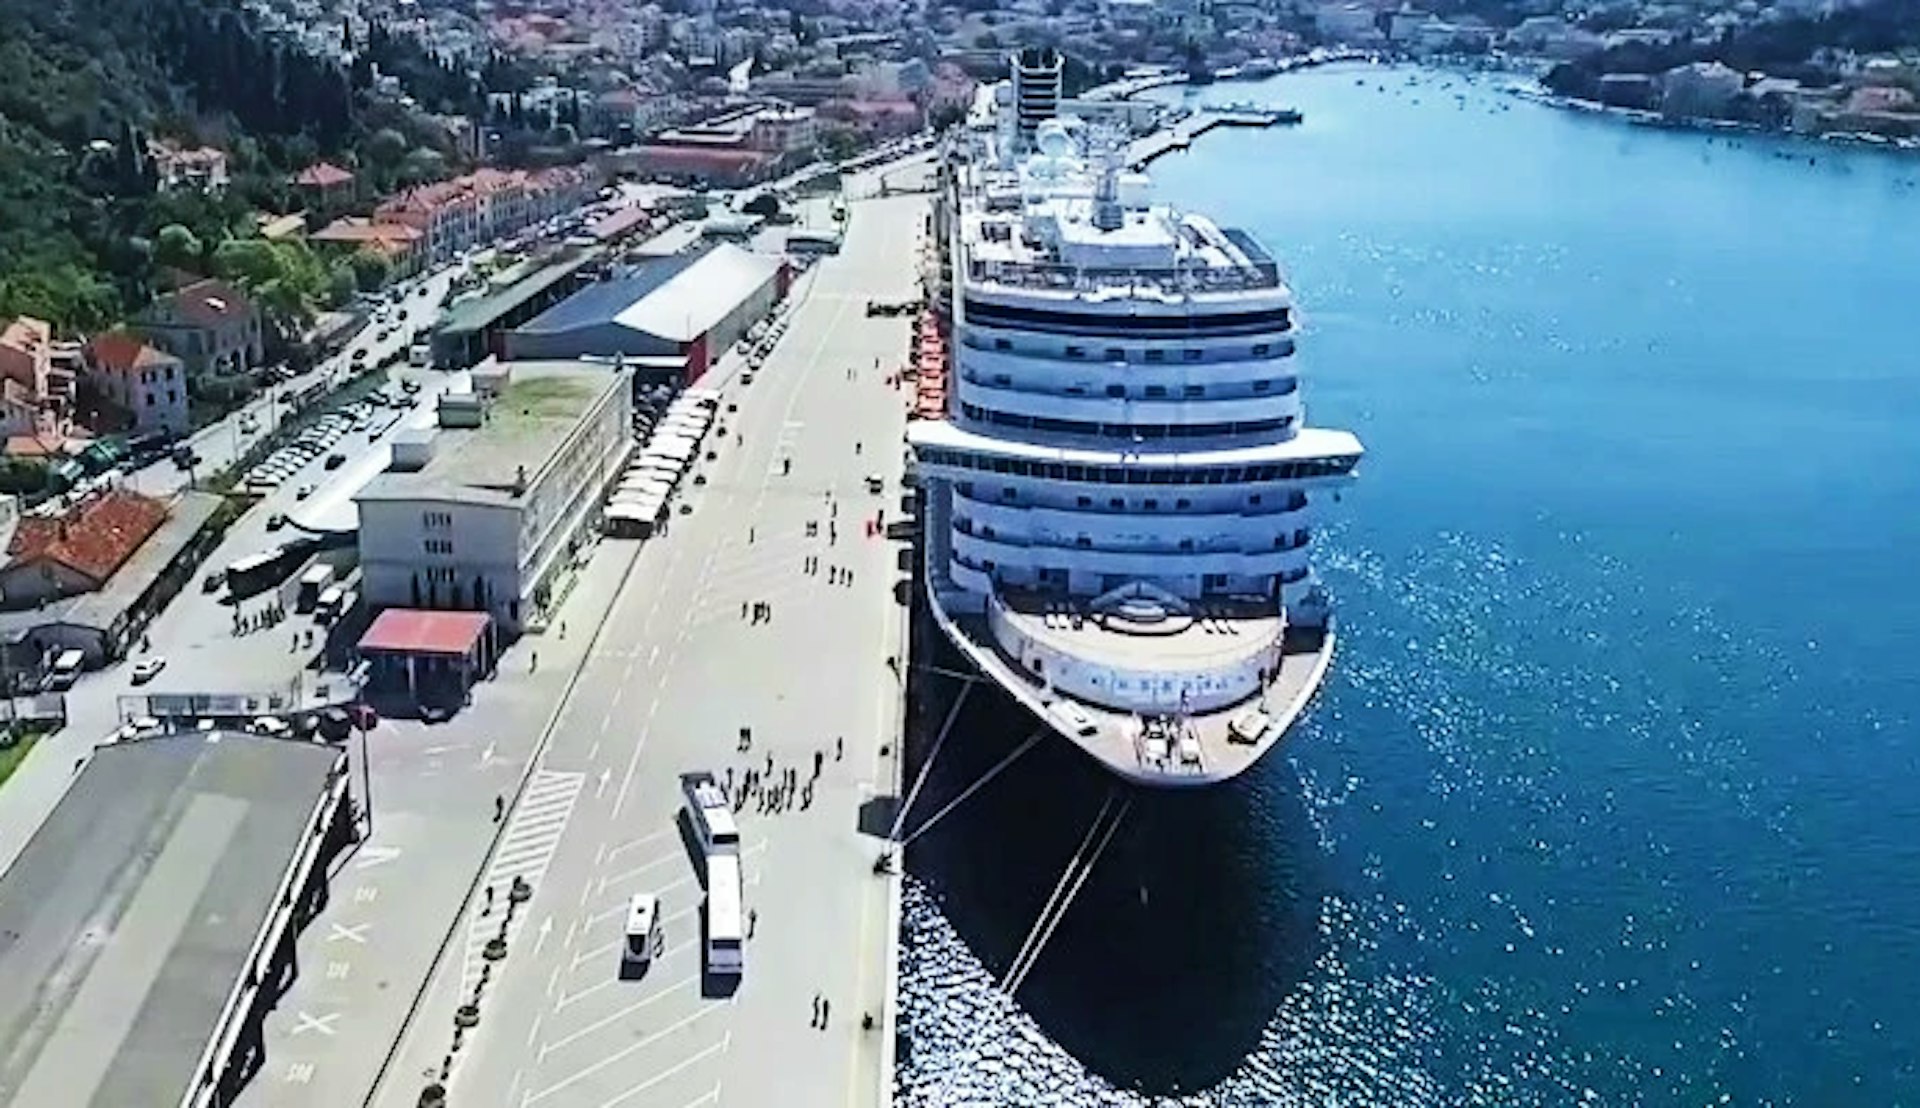 Krydstogt i Middelhavet - Dubrovnik - krydstogtterminal